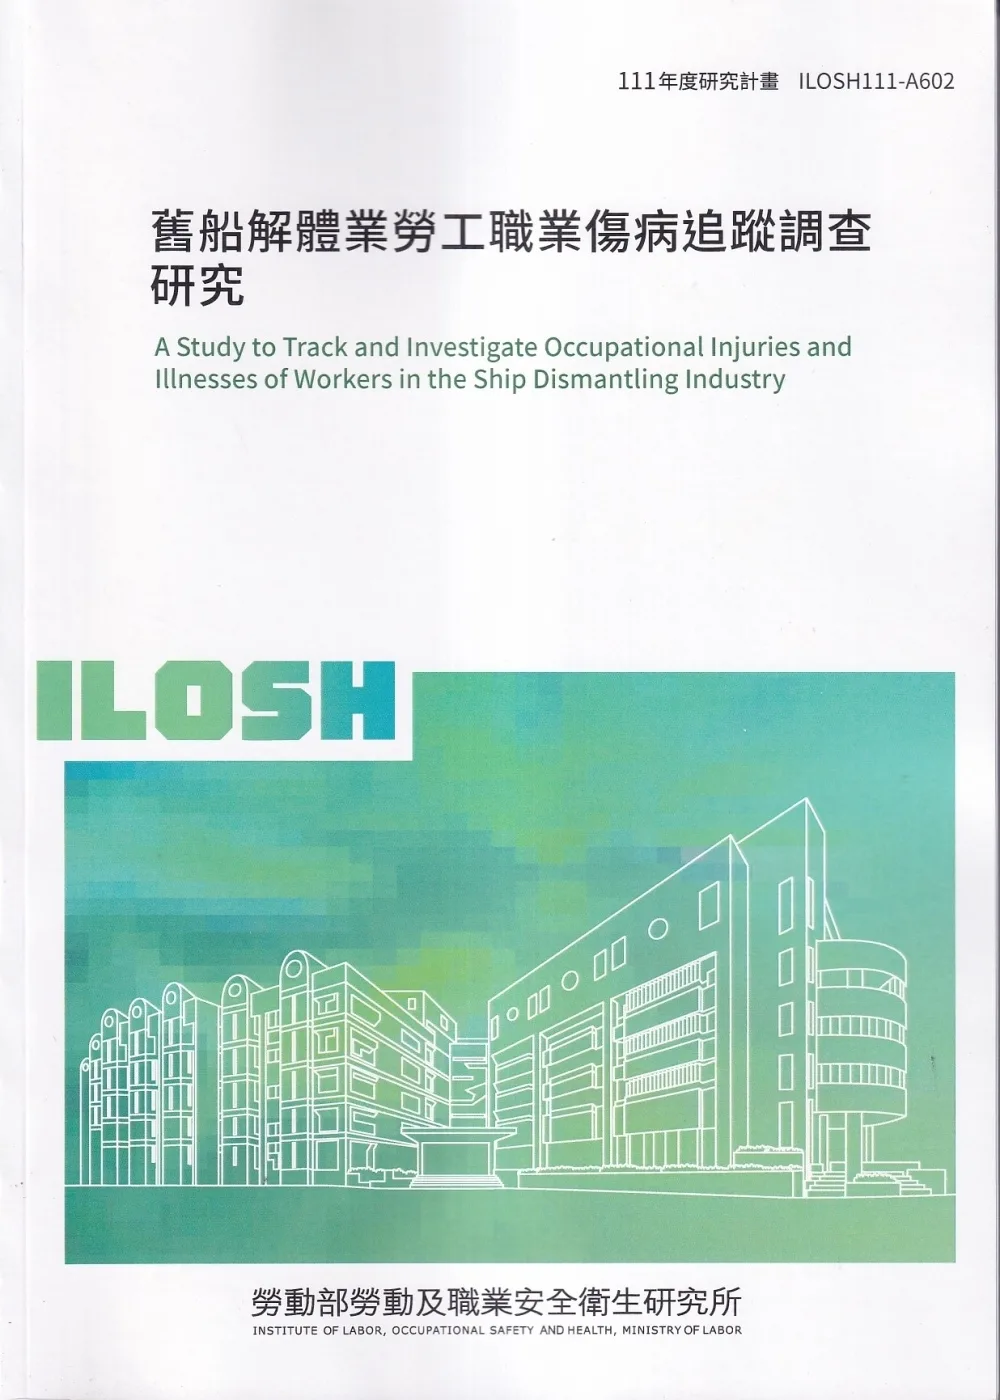 舊船解體業勞工職業傷病追蹤調查研究ILOSH111-A602